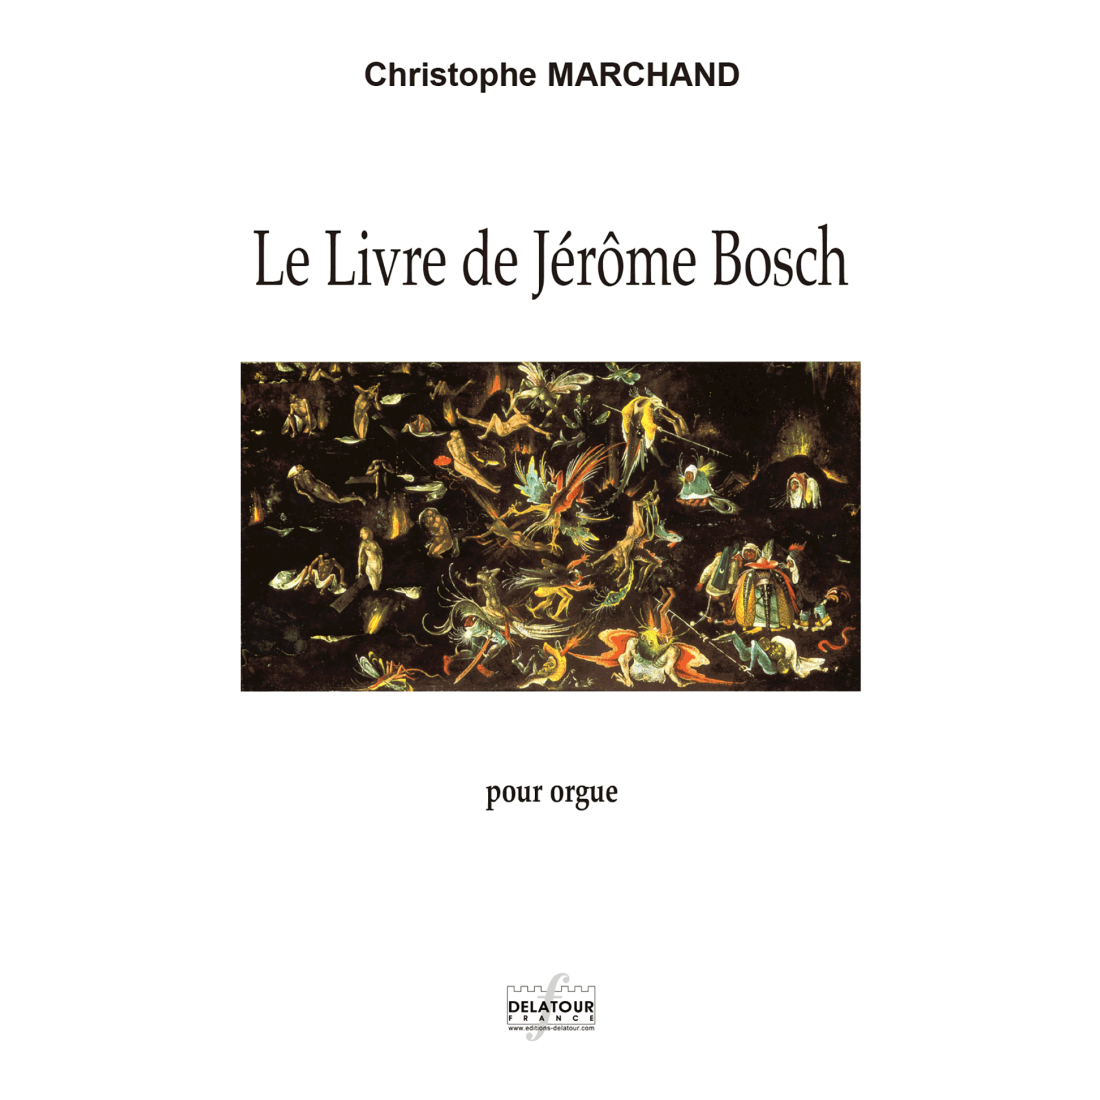 Le Livre de Jérôme Bosch for organ